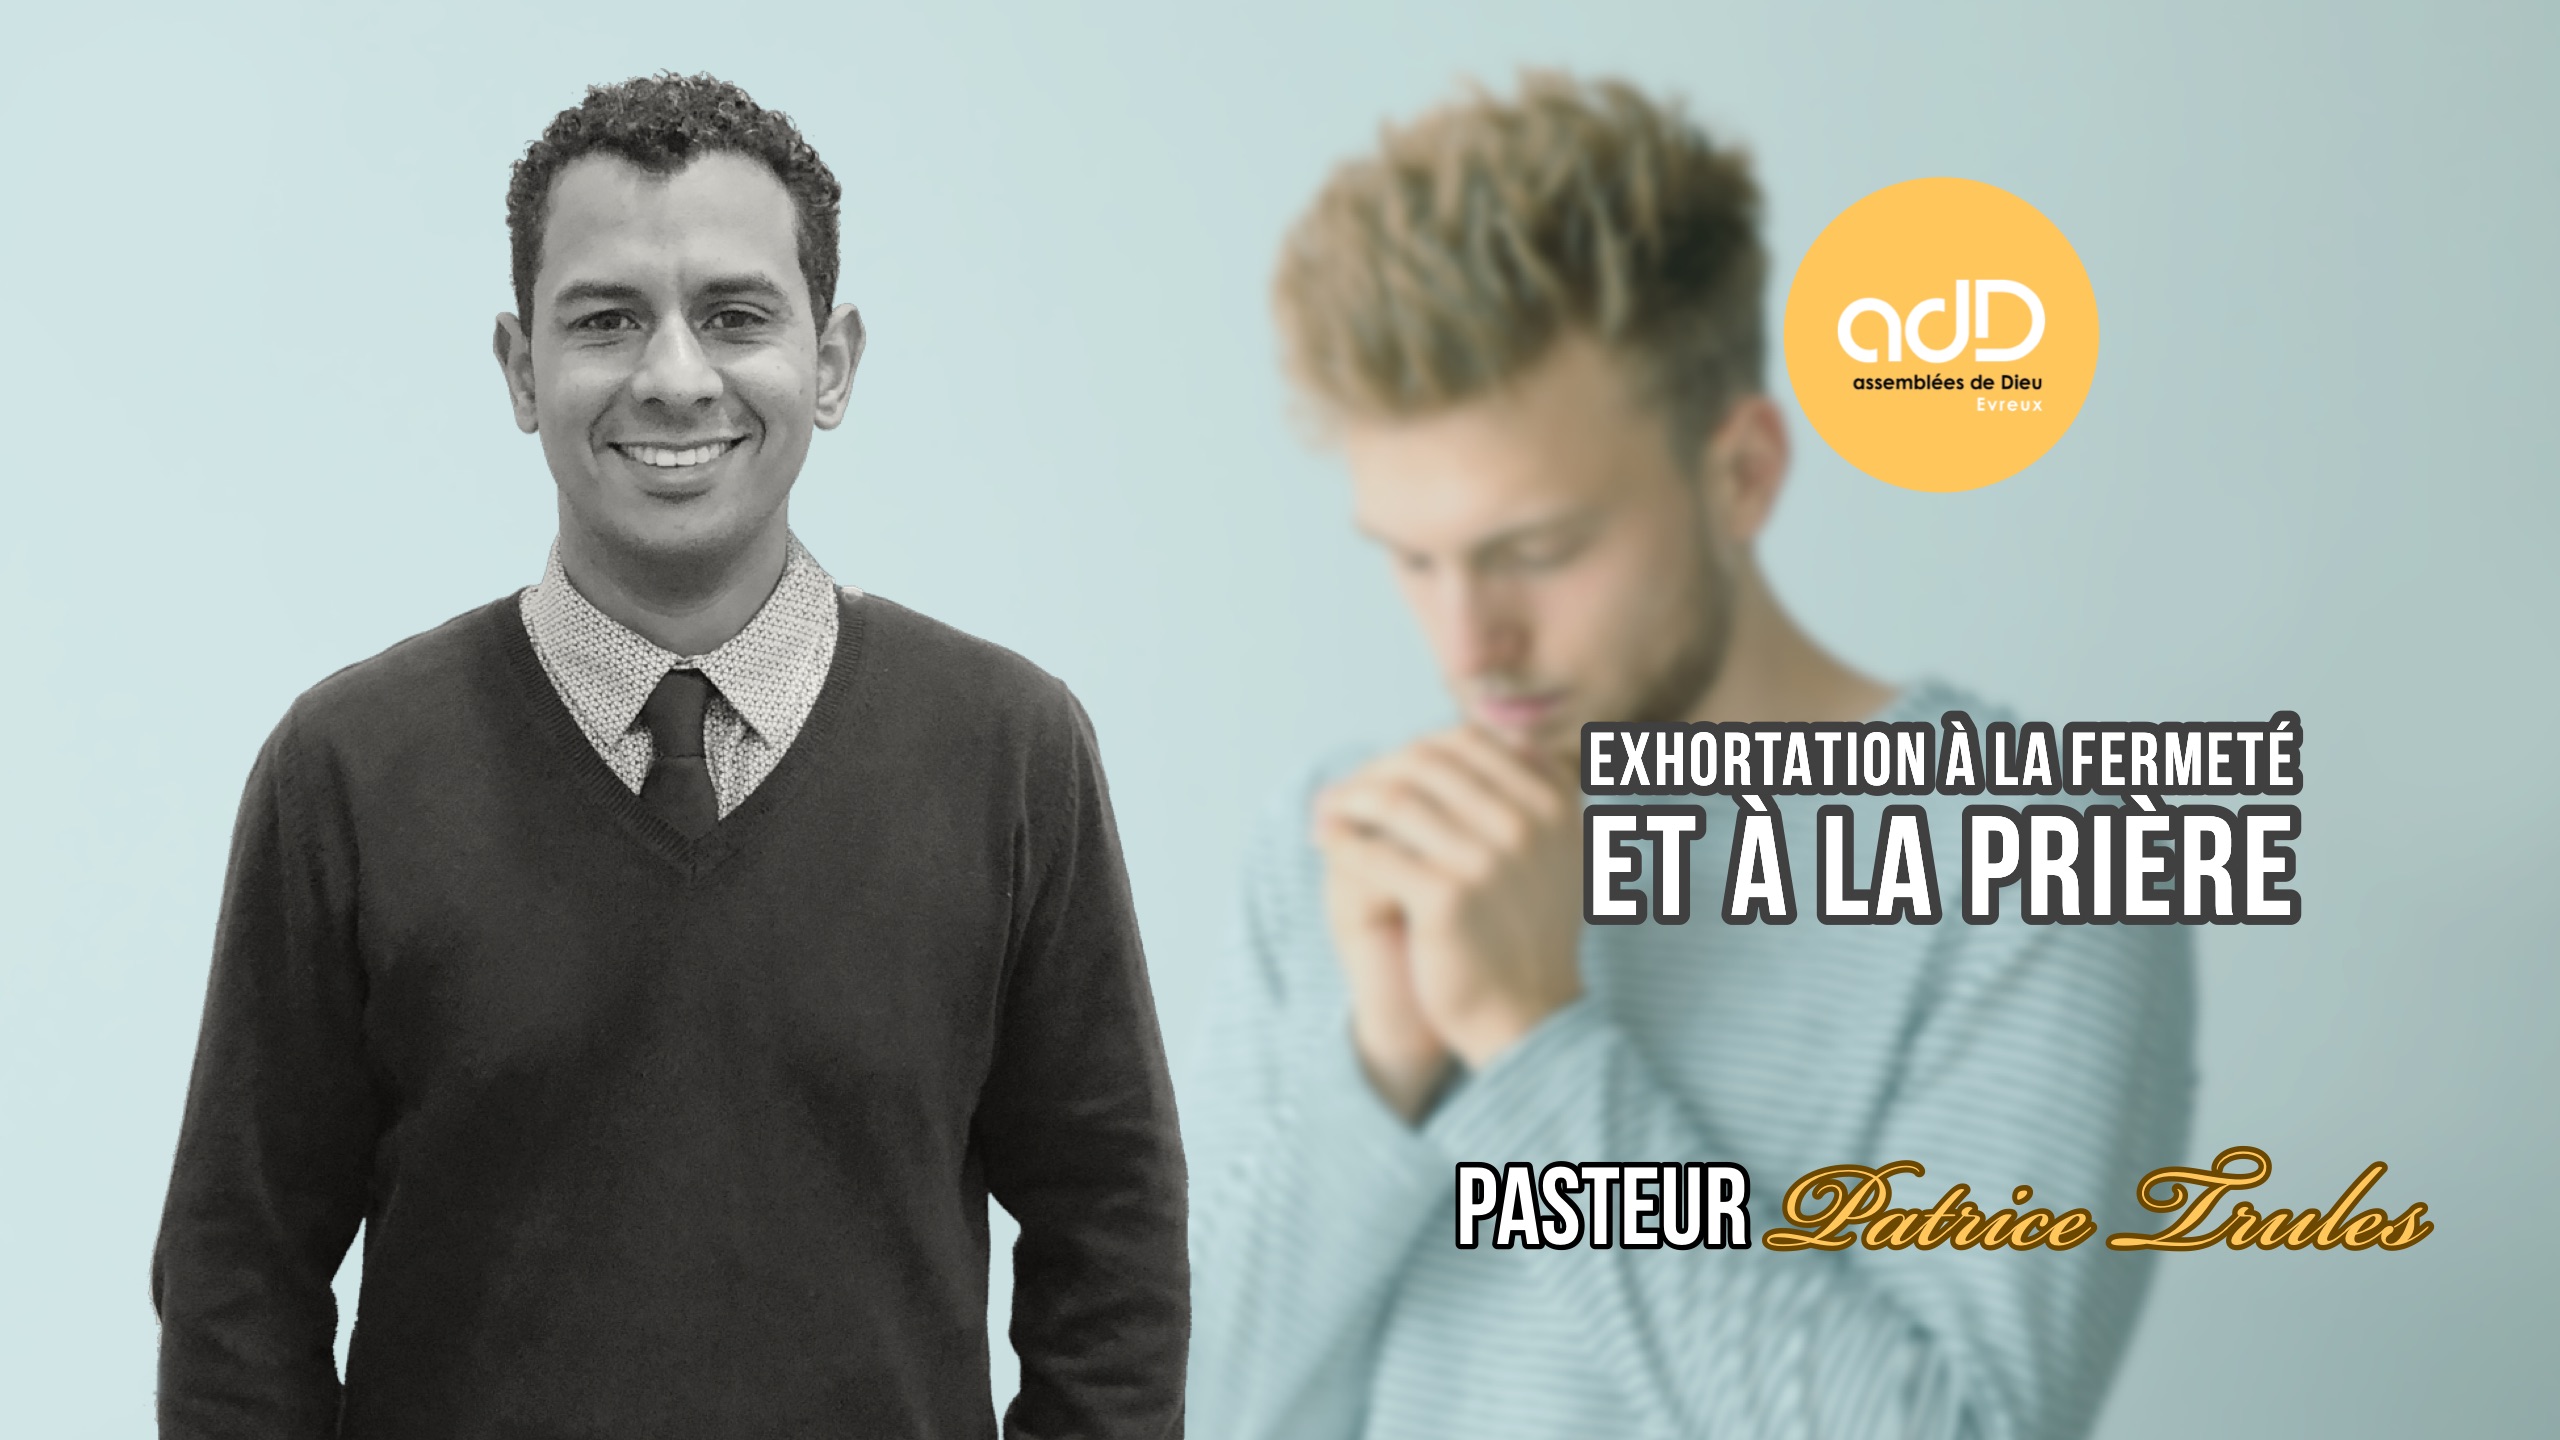 Featured image for “Exhortation à la fermeté et à la prière: Pasteur Patrice Trulès”